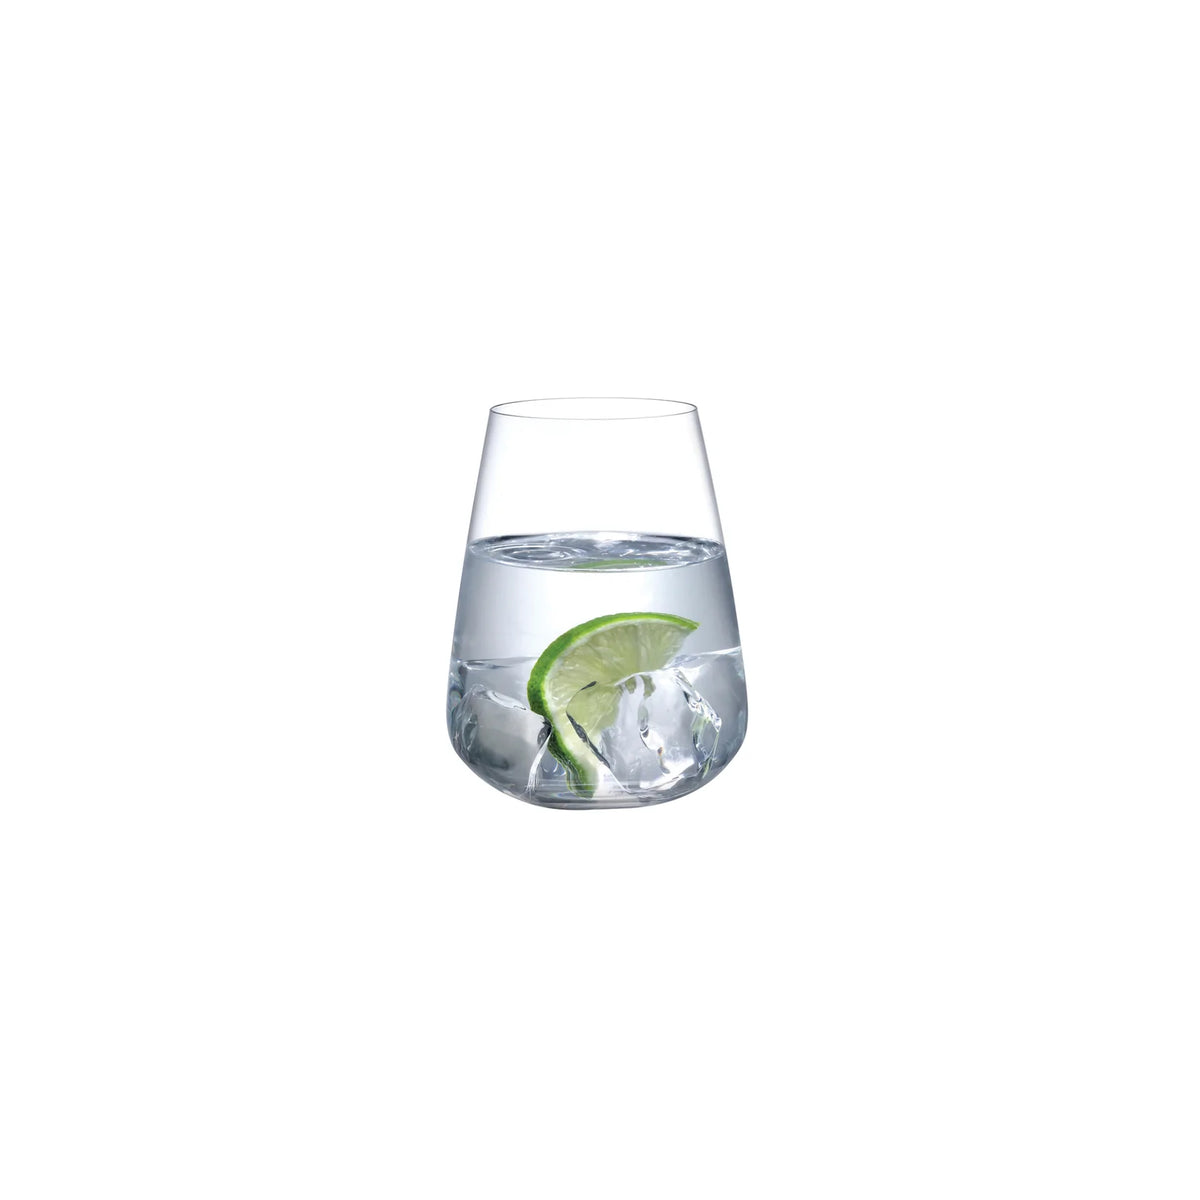 Stem Zero Vertigo Water Glass s/2